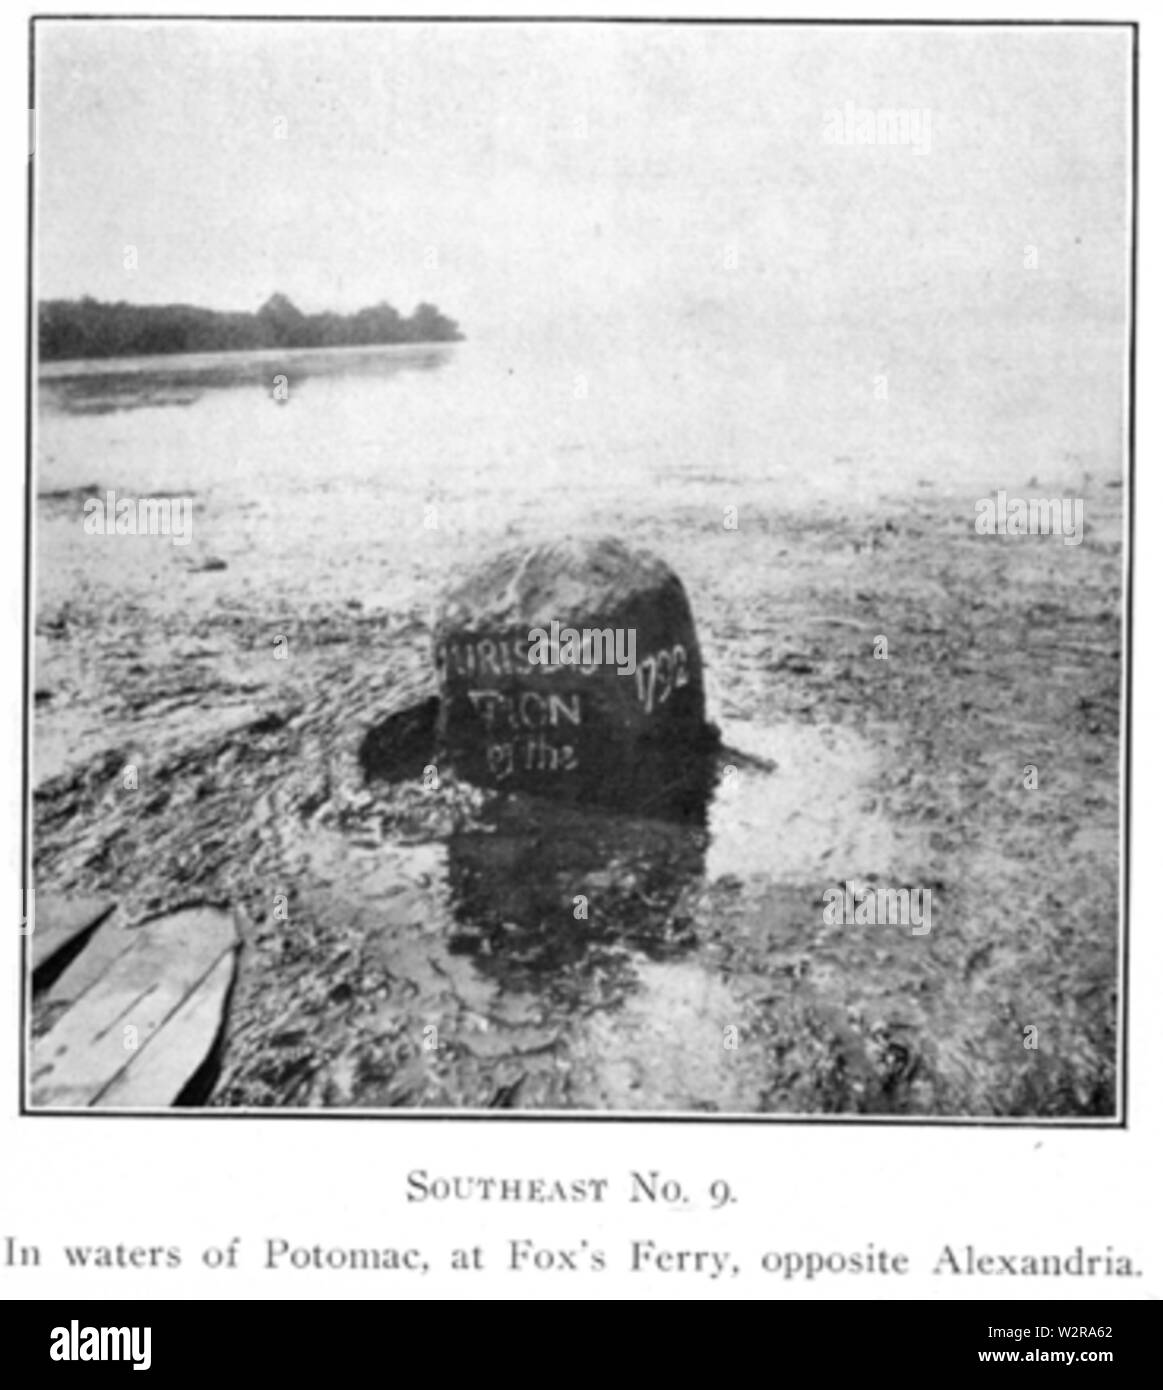 Cippo SE 9 marcatura i confini del distretto di Columbia. Questo è uno dei 40 pietre originali, quello più a sud del distretto di corrente. Nel 1907 fu essenzialmente nel fiume Potomac Foto Stock